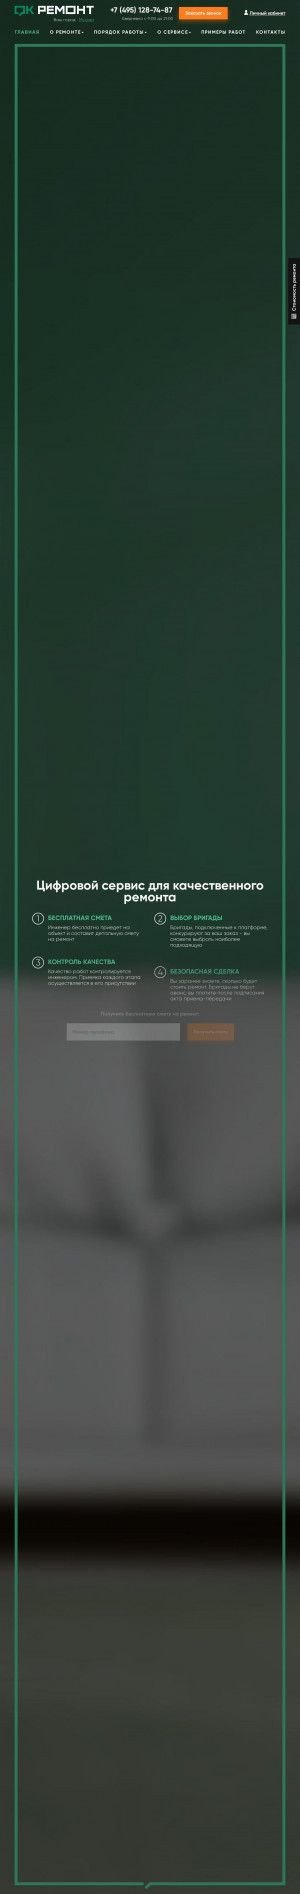 Предпросмотр для okremont.com — Платформа ОКРемонт